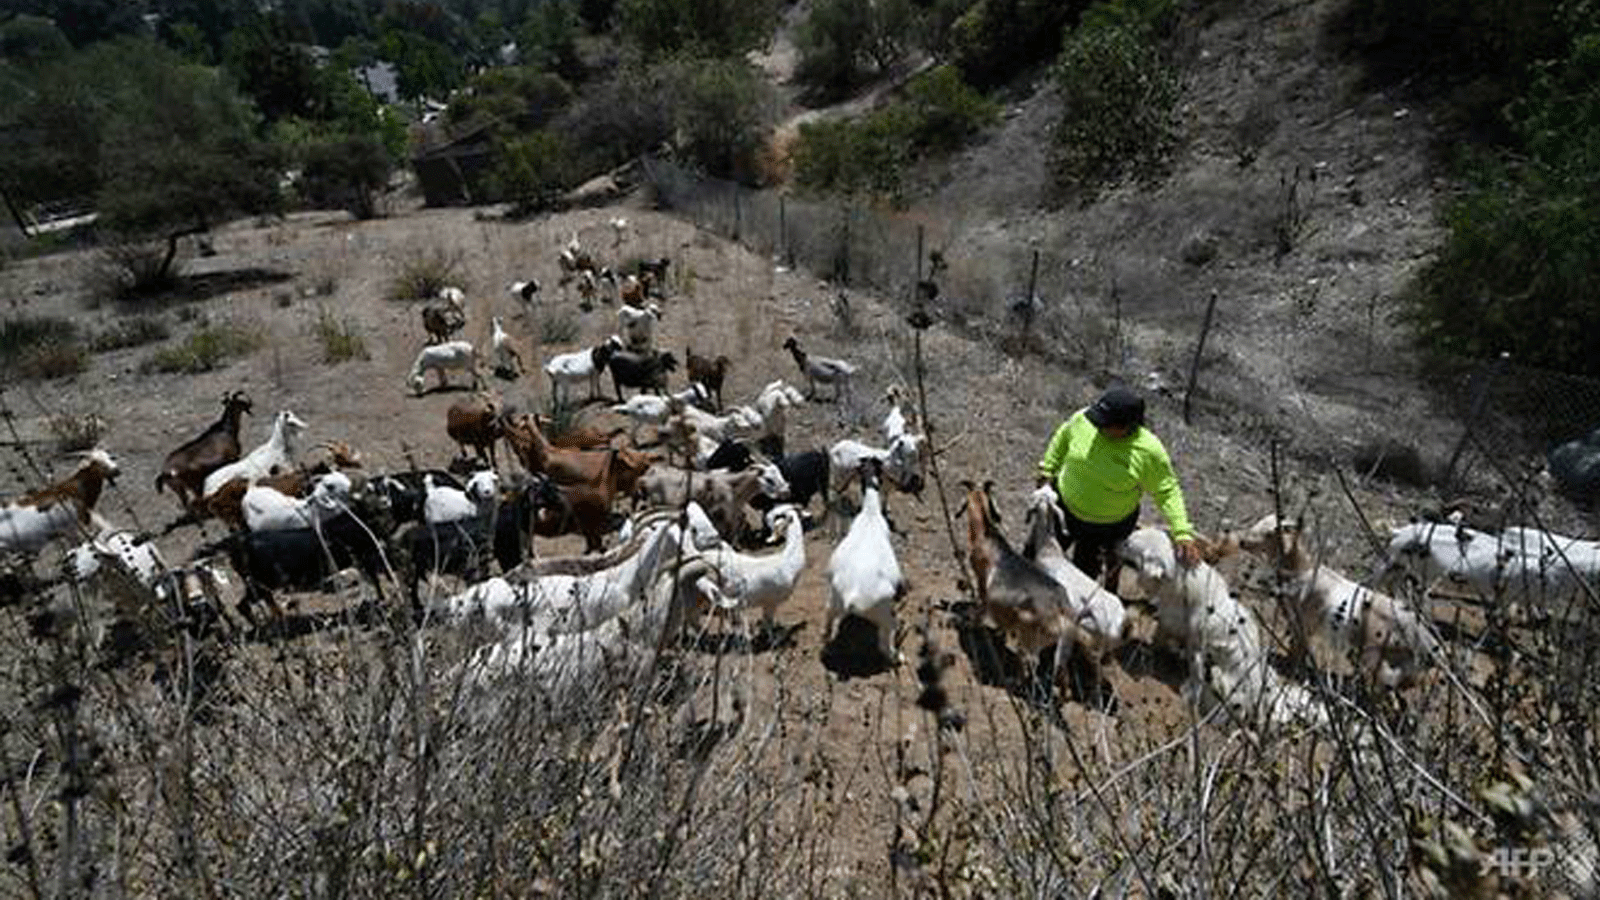 قطيع مكون من 80 رأسًا من الماعز يتغذى على الغطاء النباتي لتقليل الوقود المحتمل لحرائق الغابات في البراري في قطعة أرض جبلية في جليندال، خارج لوس أنجلوس. تموز/يوليو 2021